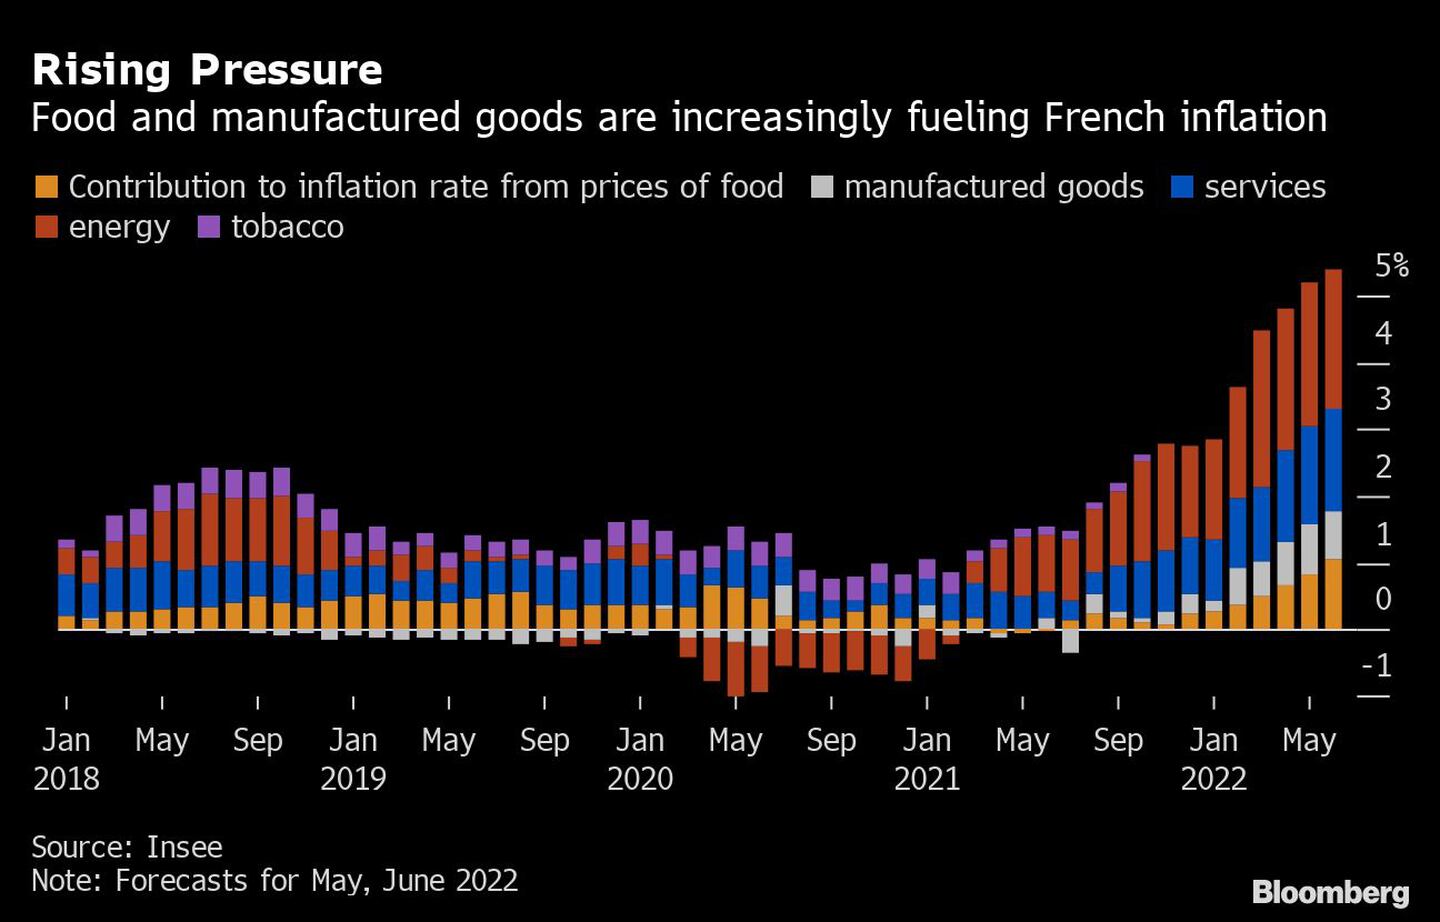 Pressão Crescente | Alimentos e produtos manufaturados estão alimentando cada vez mais a inflação francesadfd